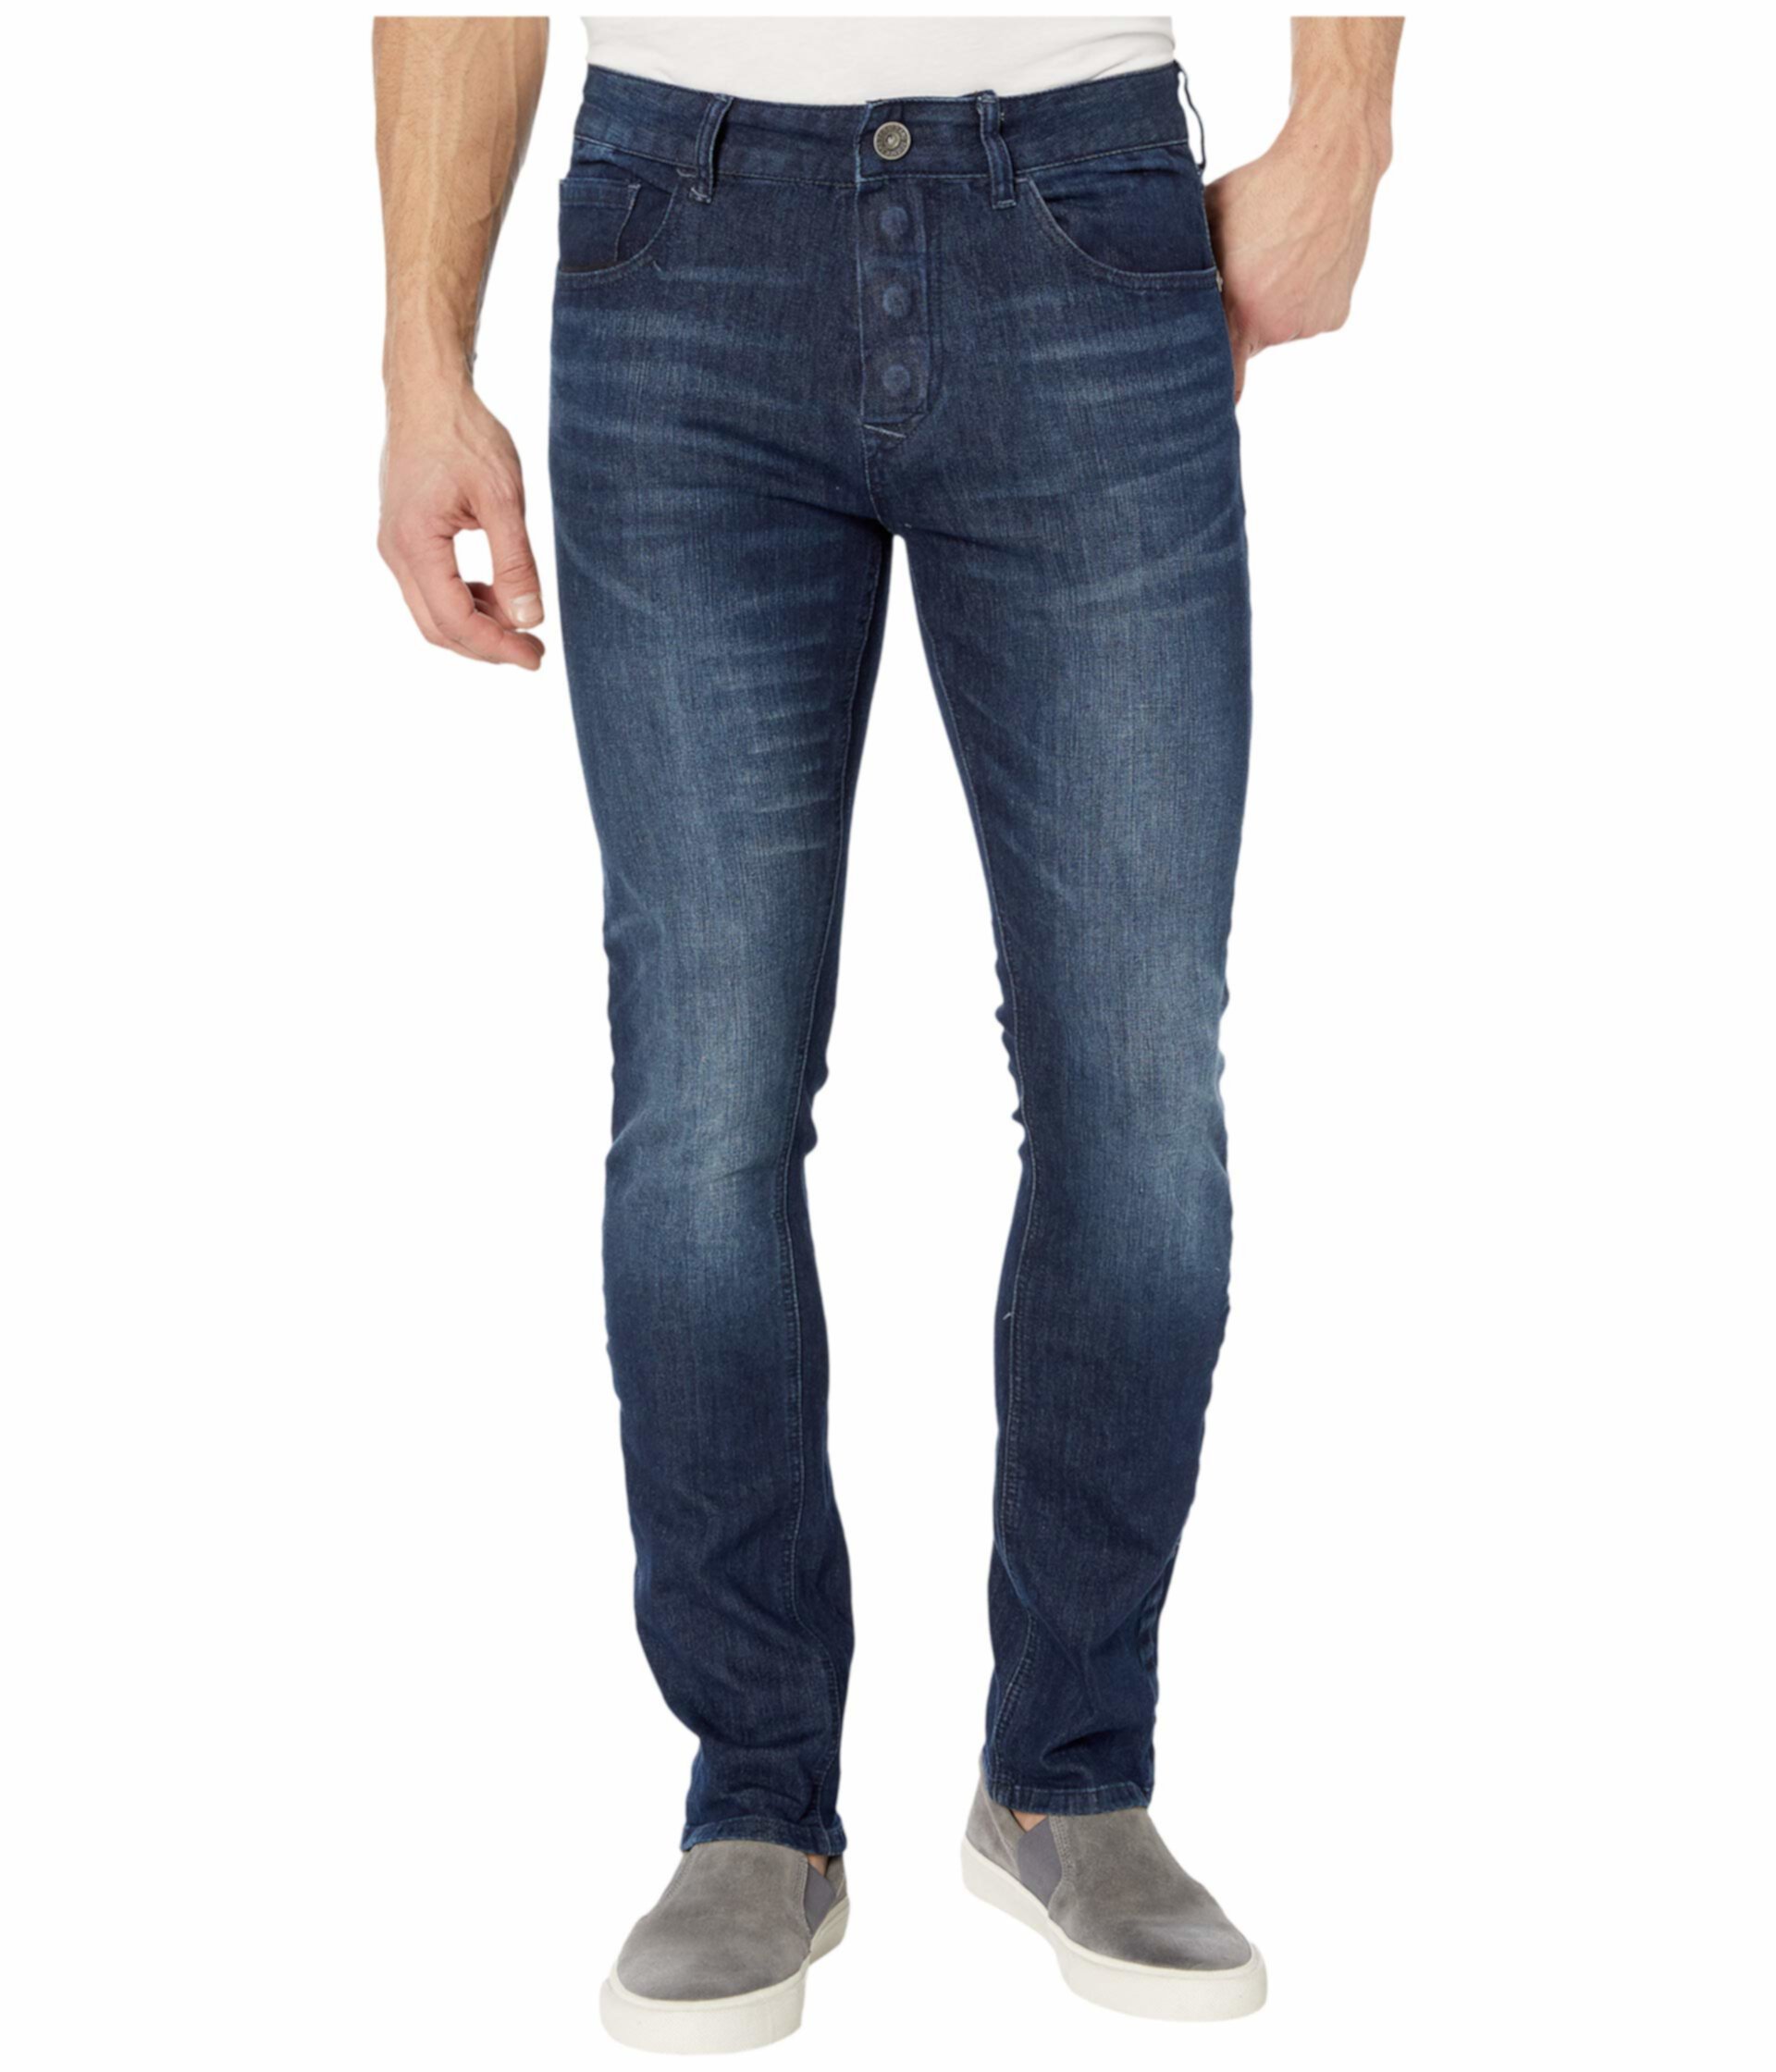 Адаптивные узкие прямые джинсы с застежкой на магнитах и липучками Micro Velcro® в цвете Vouvant Dark Seven7